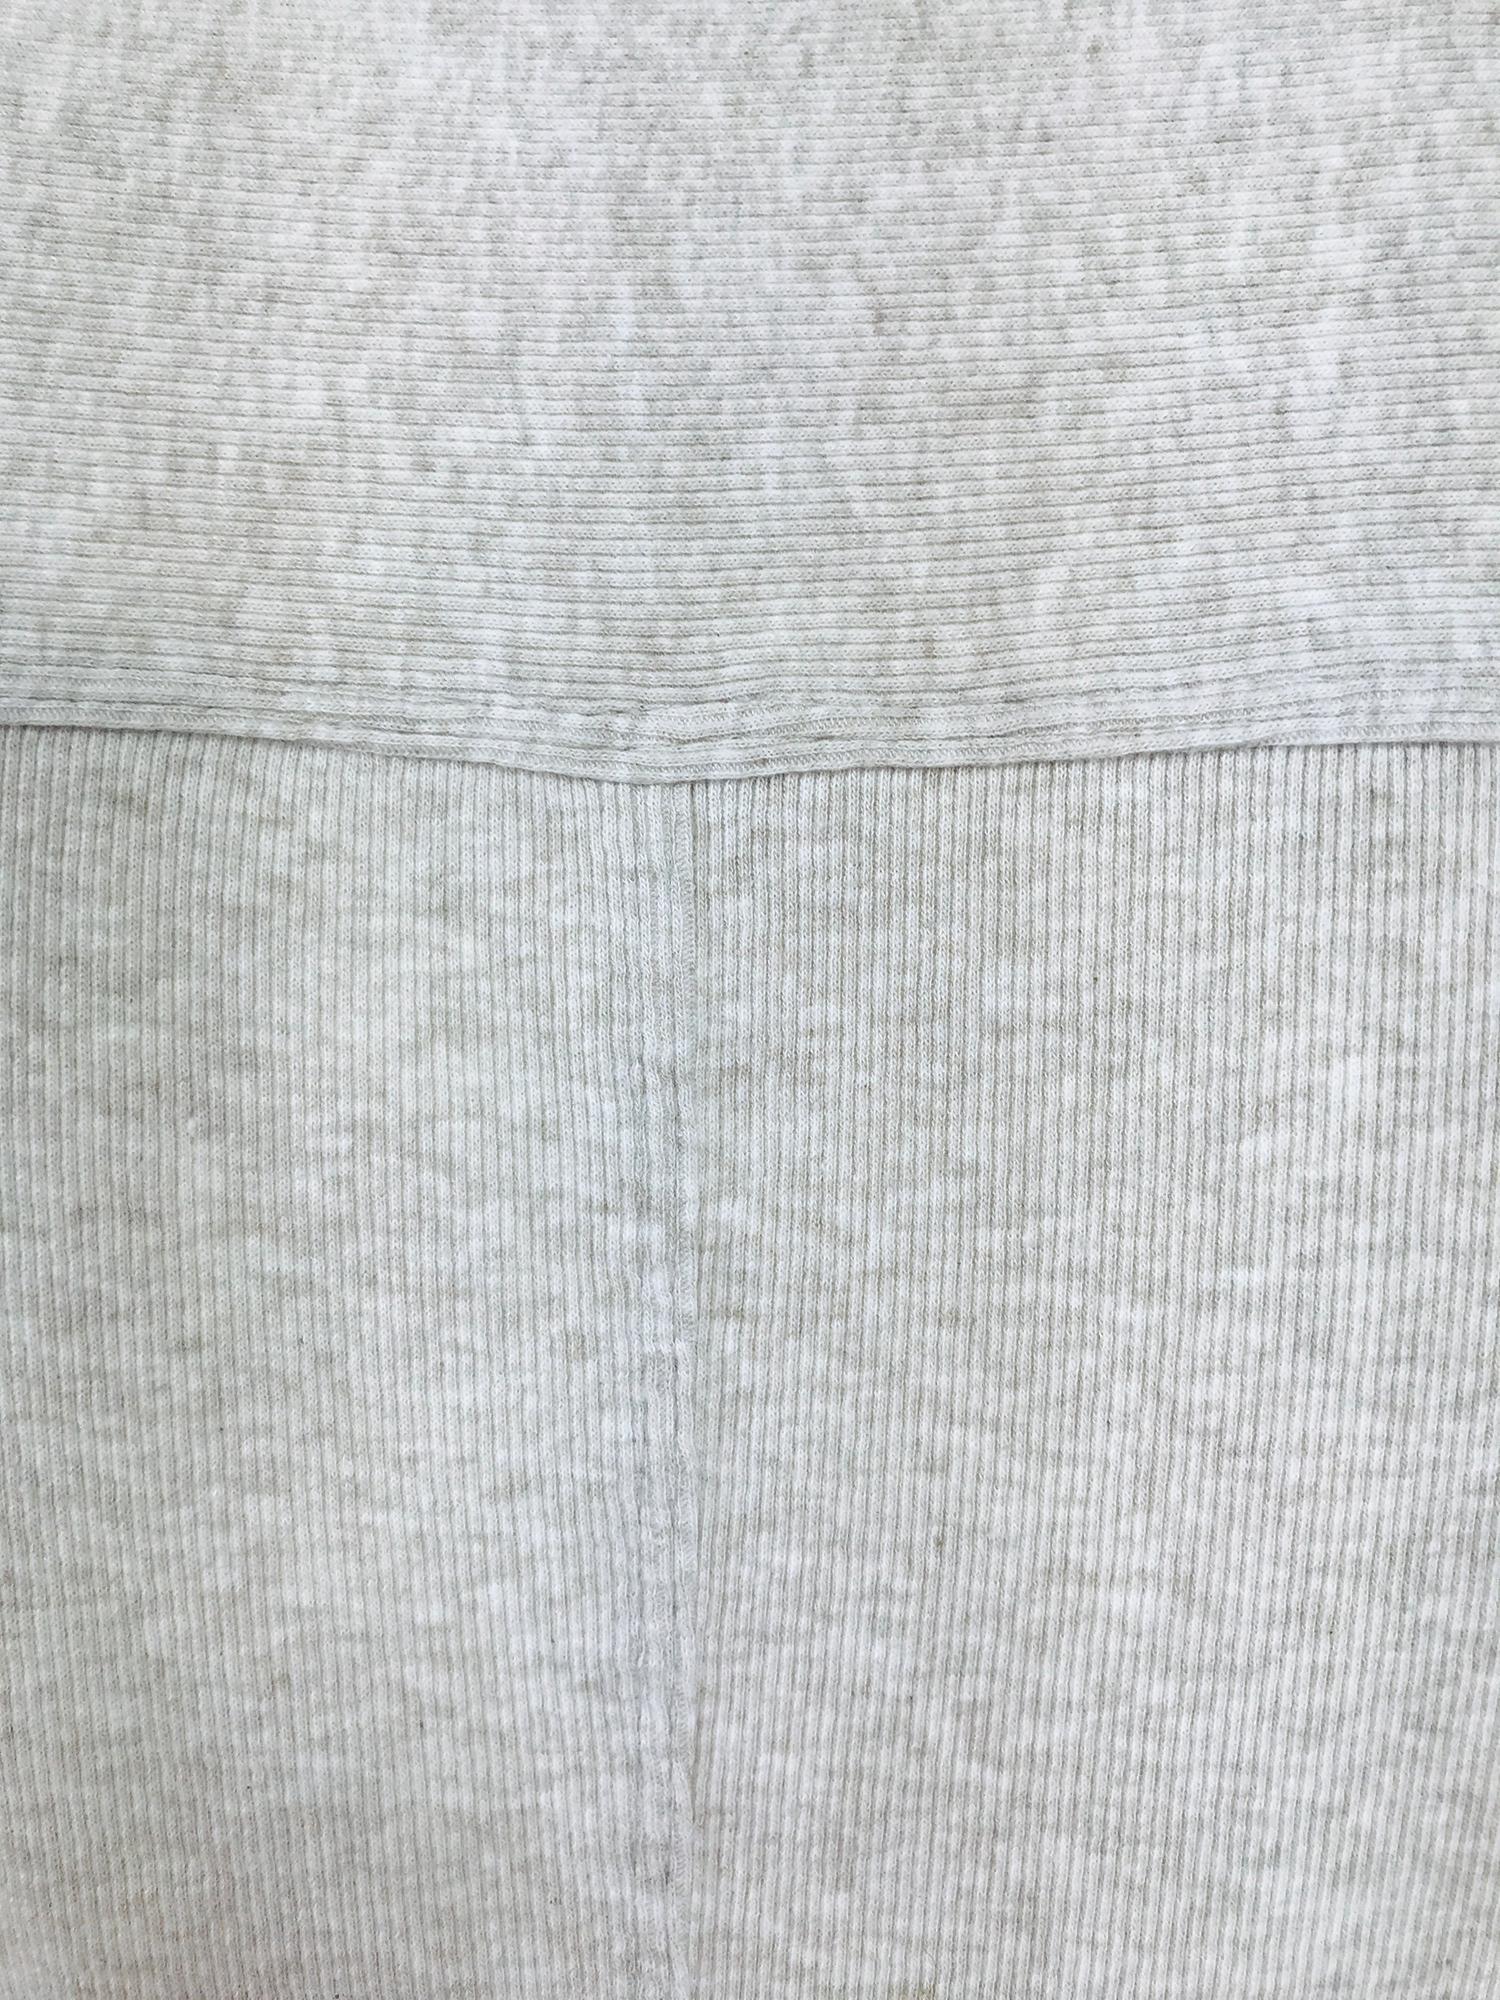 Brunello Cucinelli Cream Cotton & Linen Knit Button Front Jacket XS For Sale 7